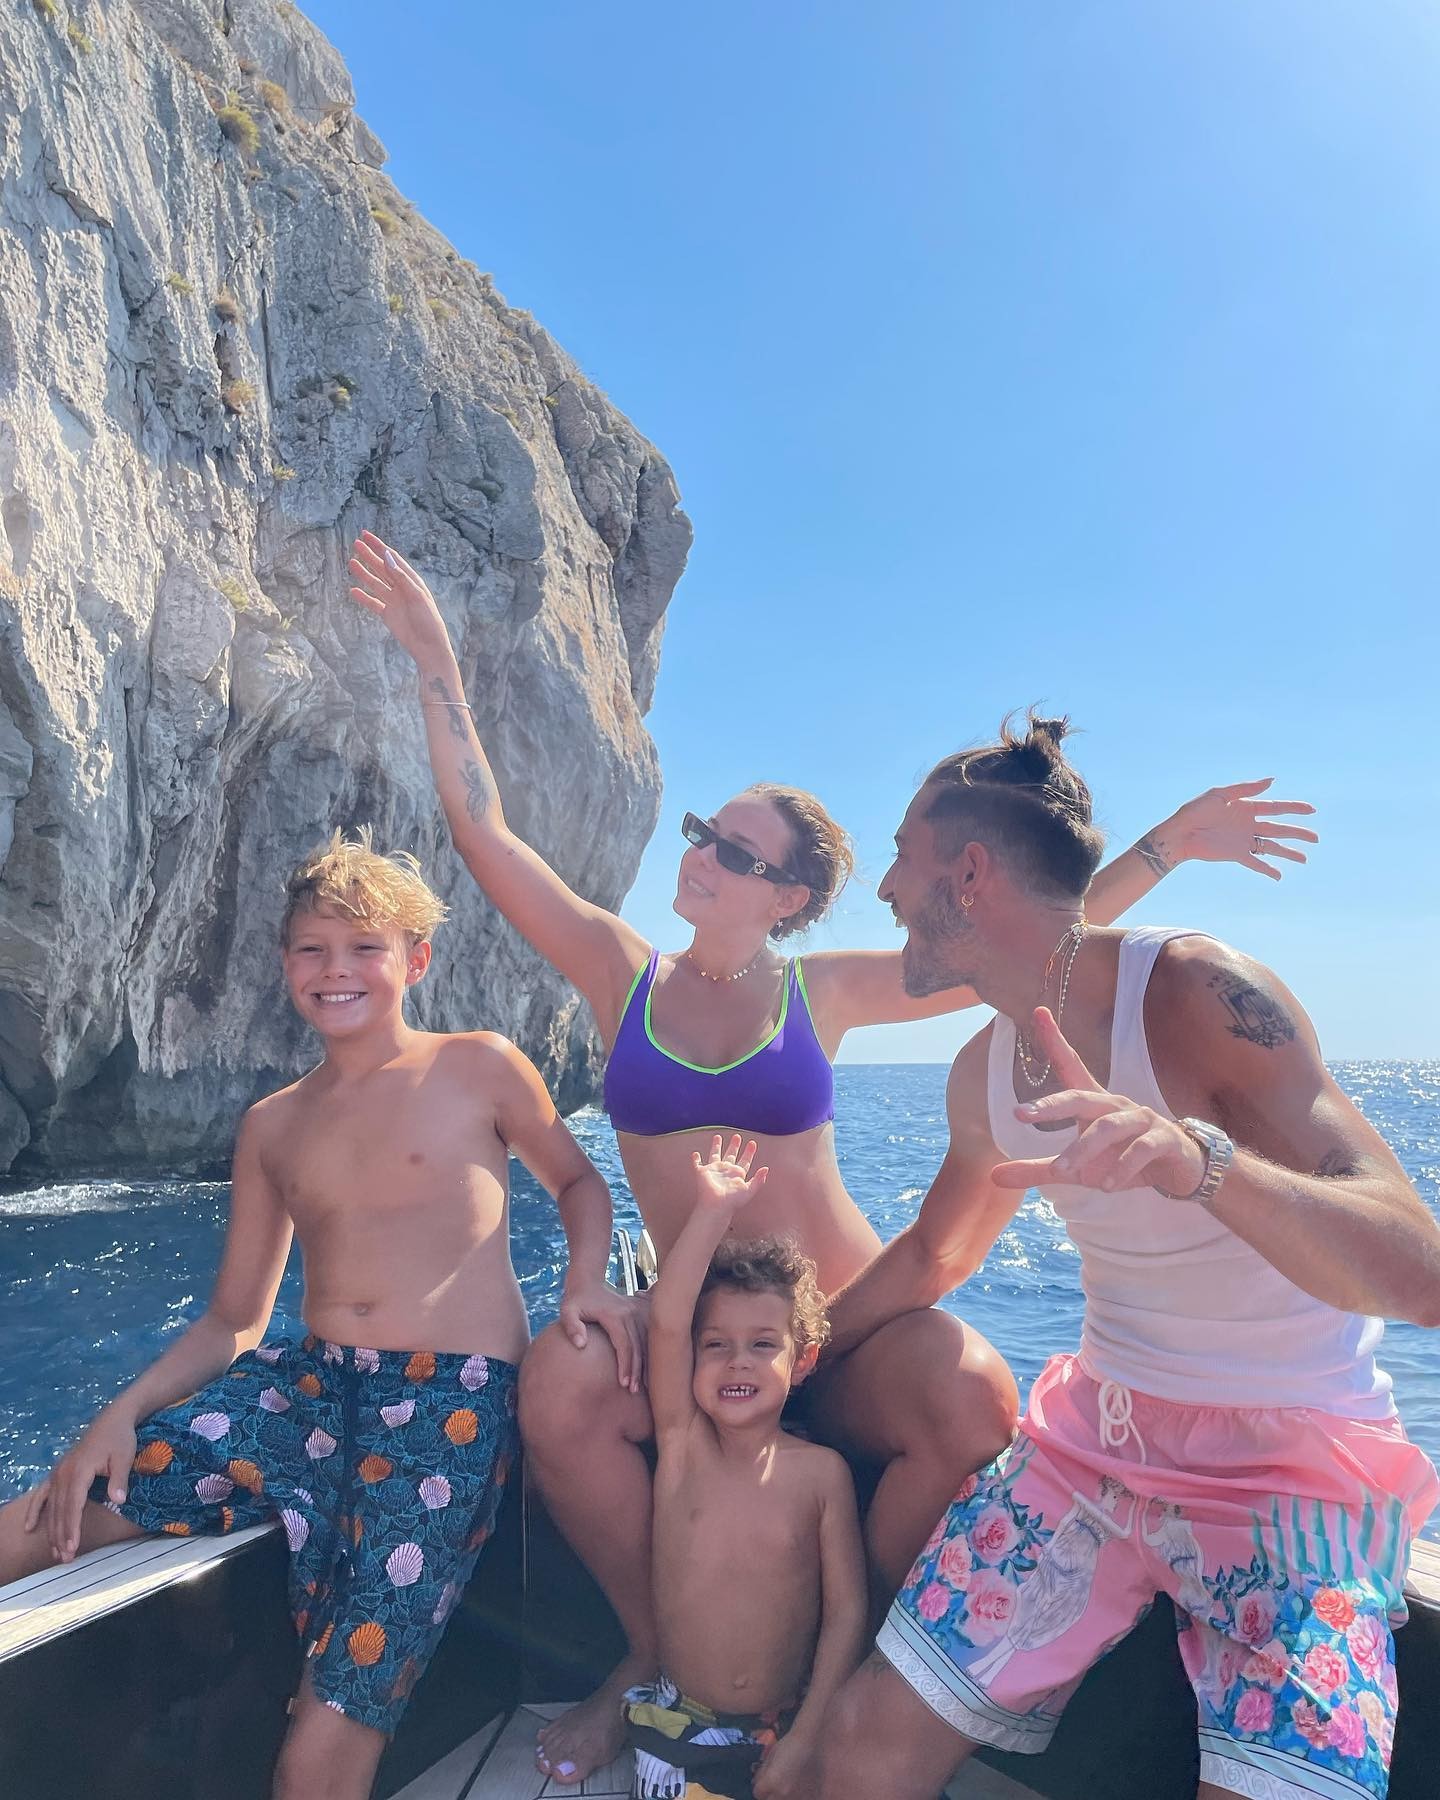 Carol Dantas e Vini Martinez com Davi Lucca e Valentim em Ibiza (Foto: Reprodução/Instagram)